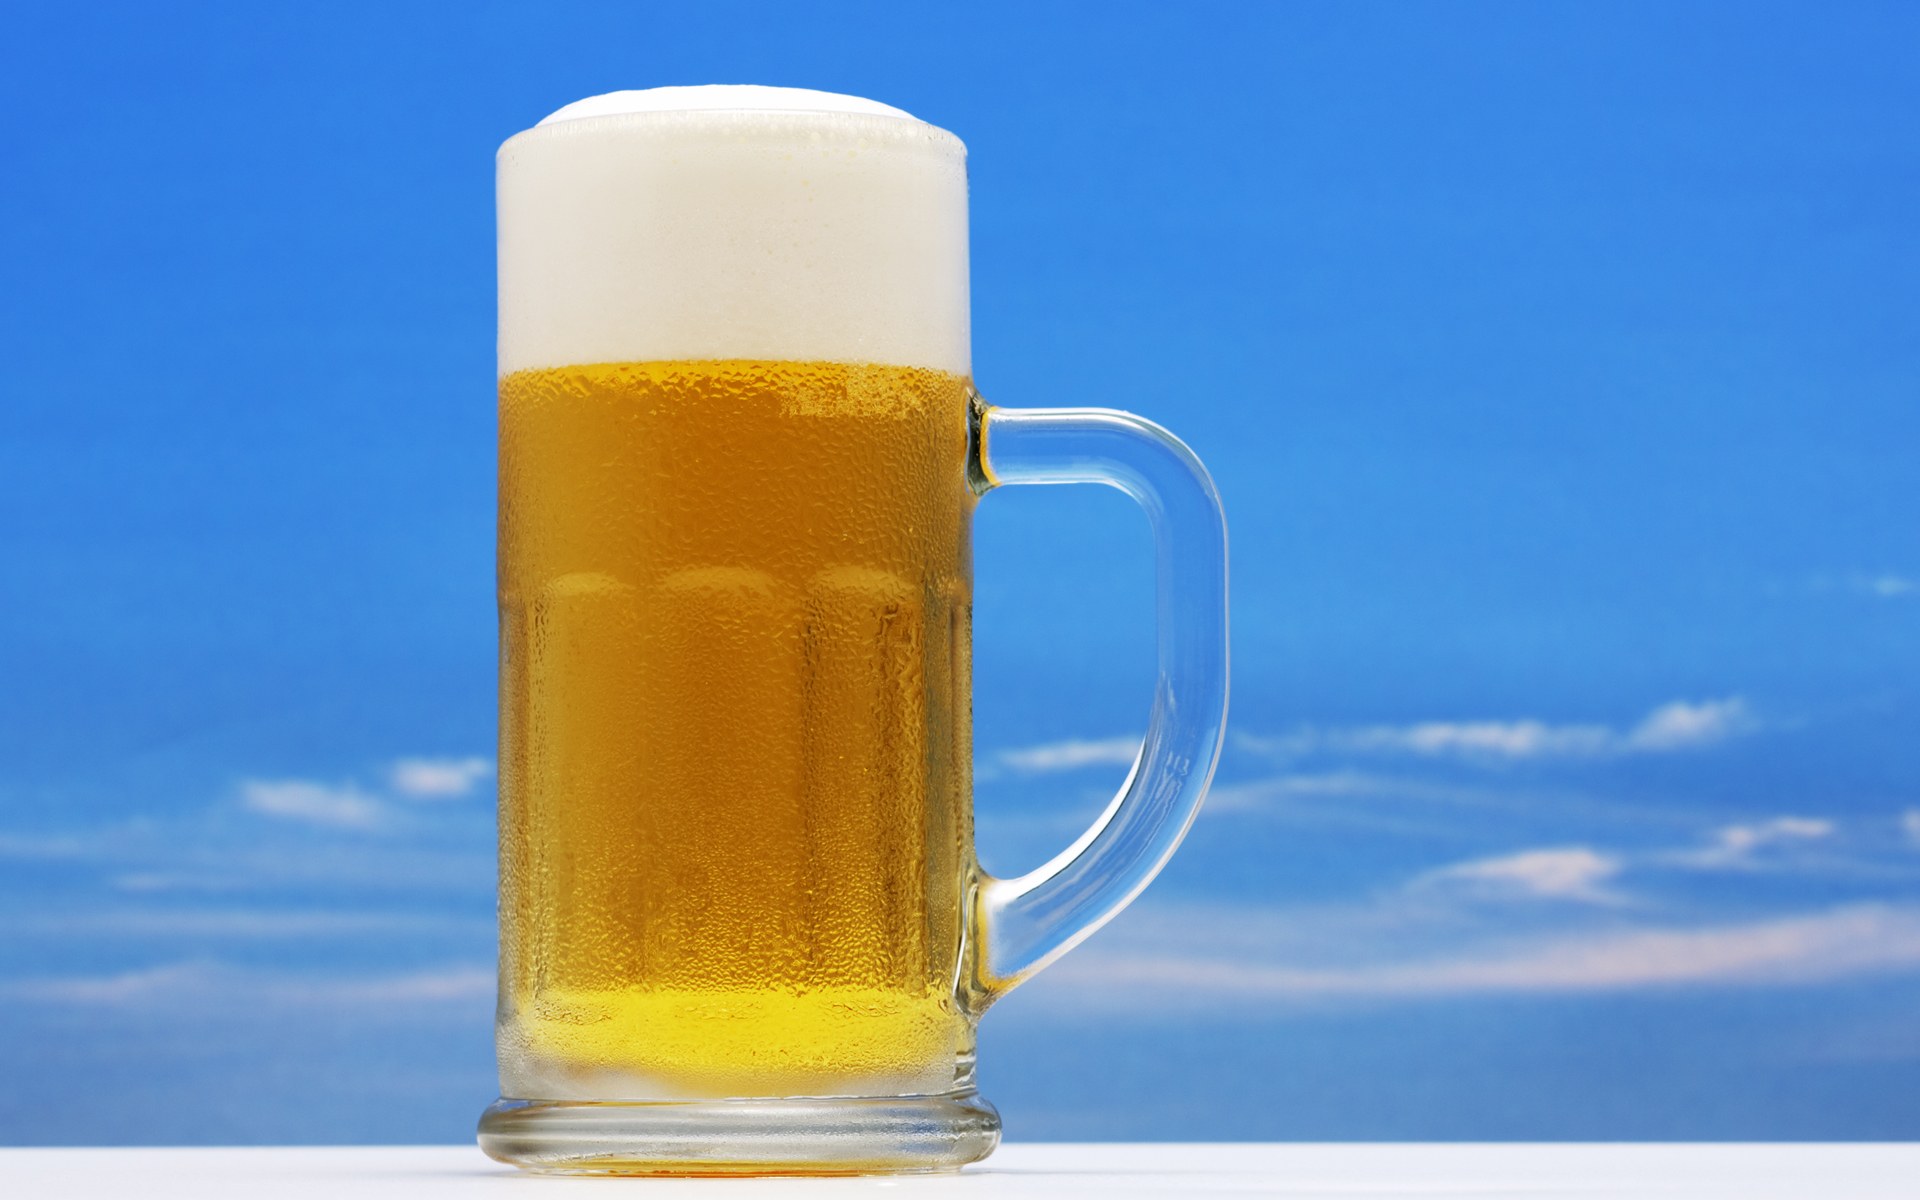  Los 7 beneficios de beber cerveza